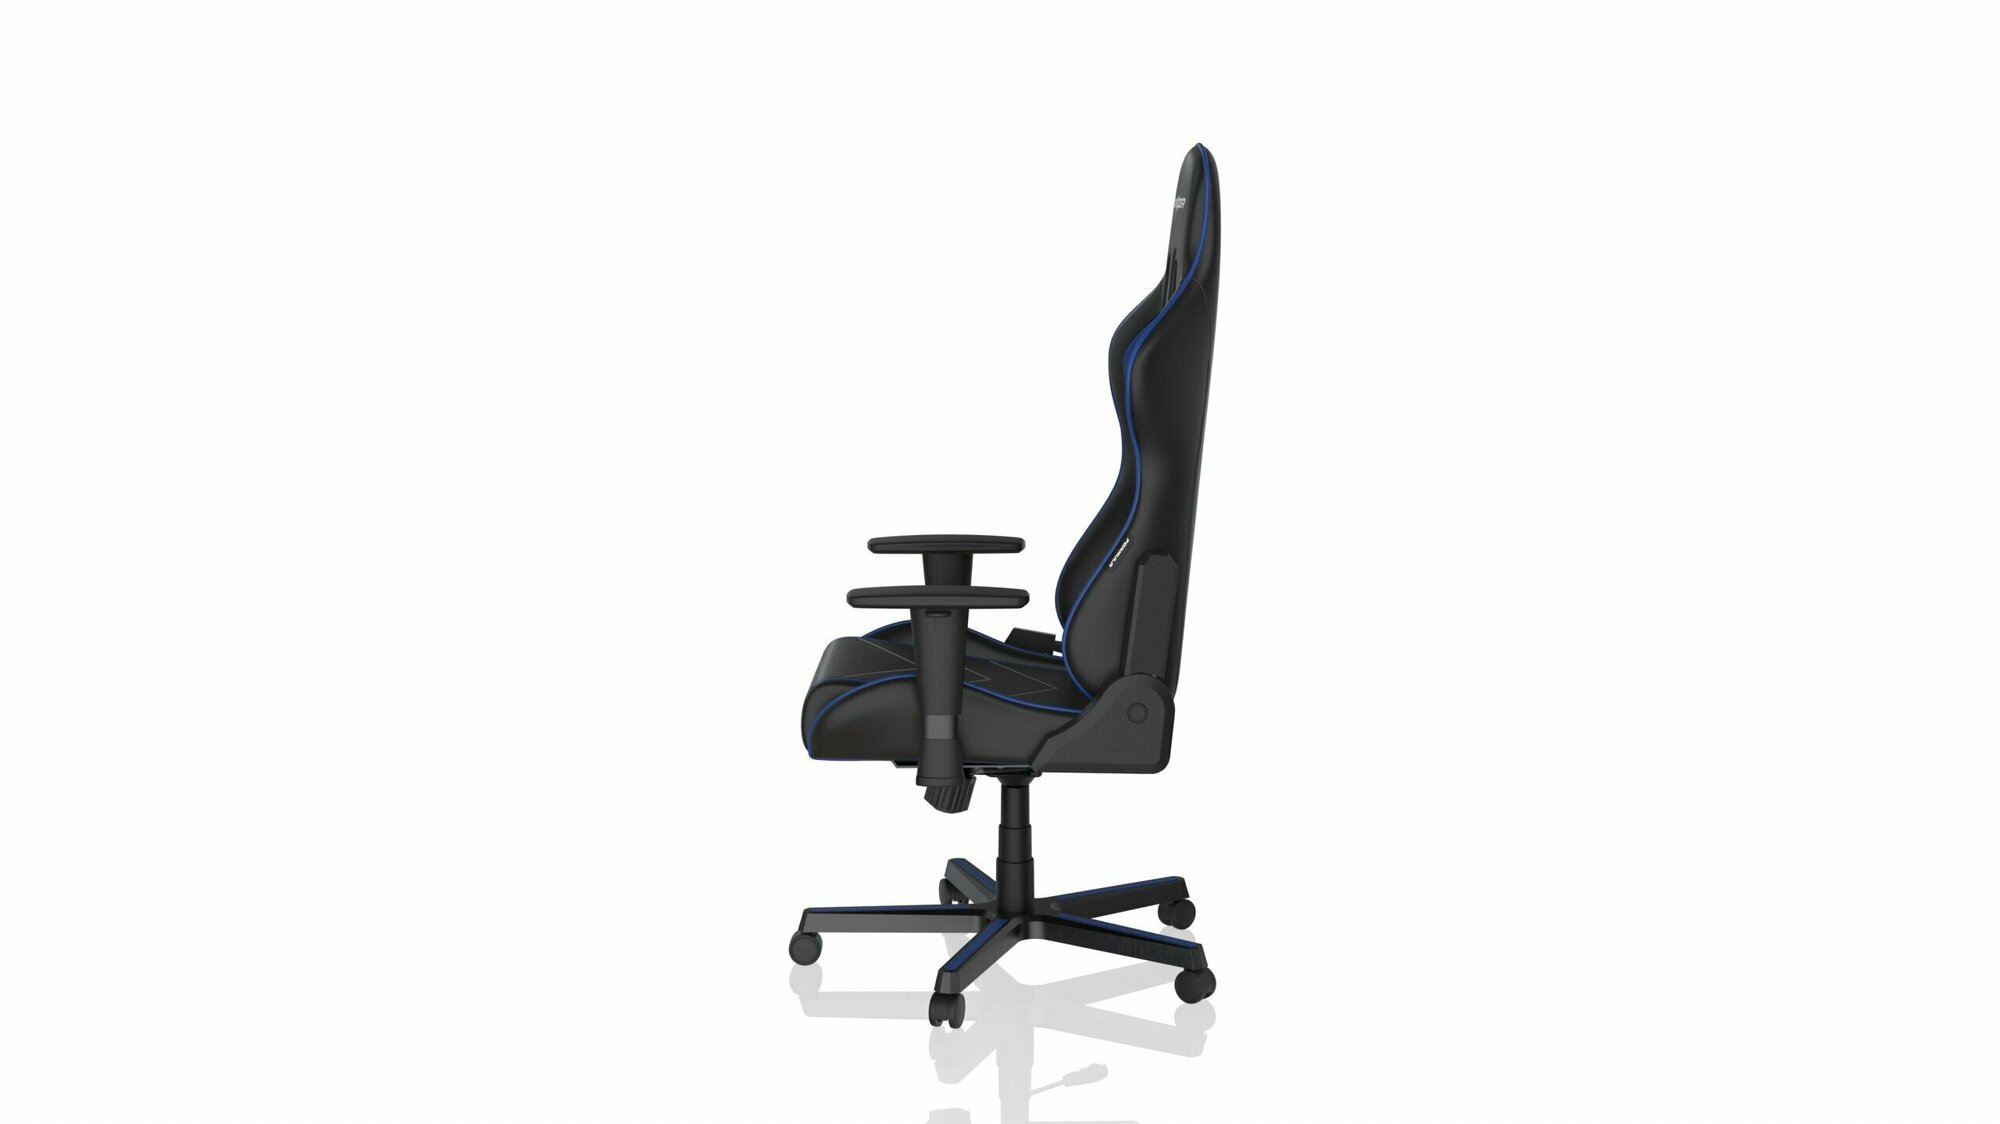 Компьютерное кресло DXRacer Formula OH/FE08 игровое